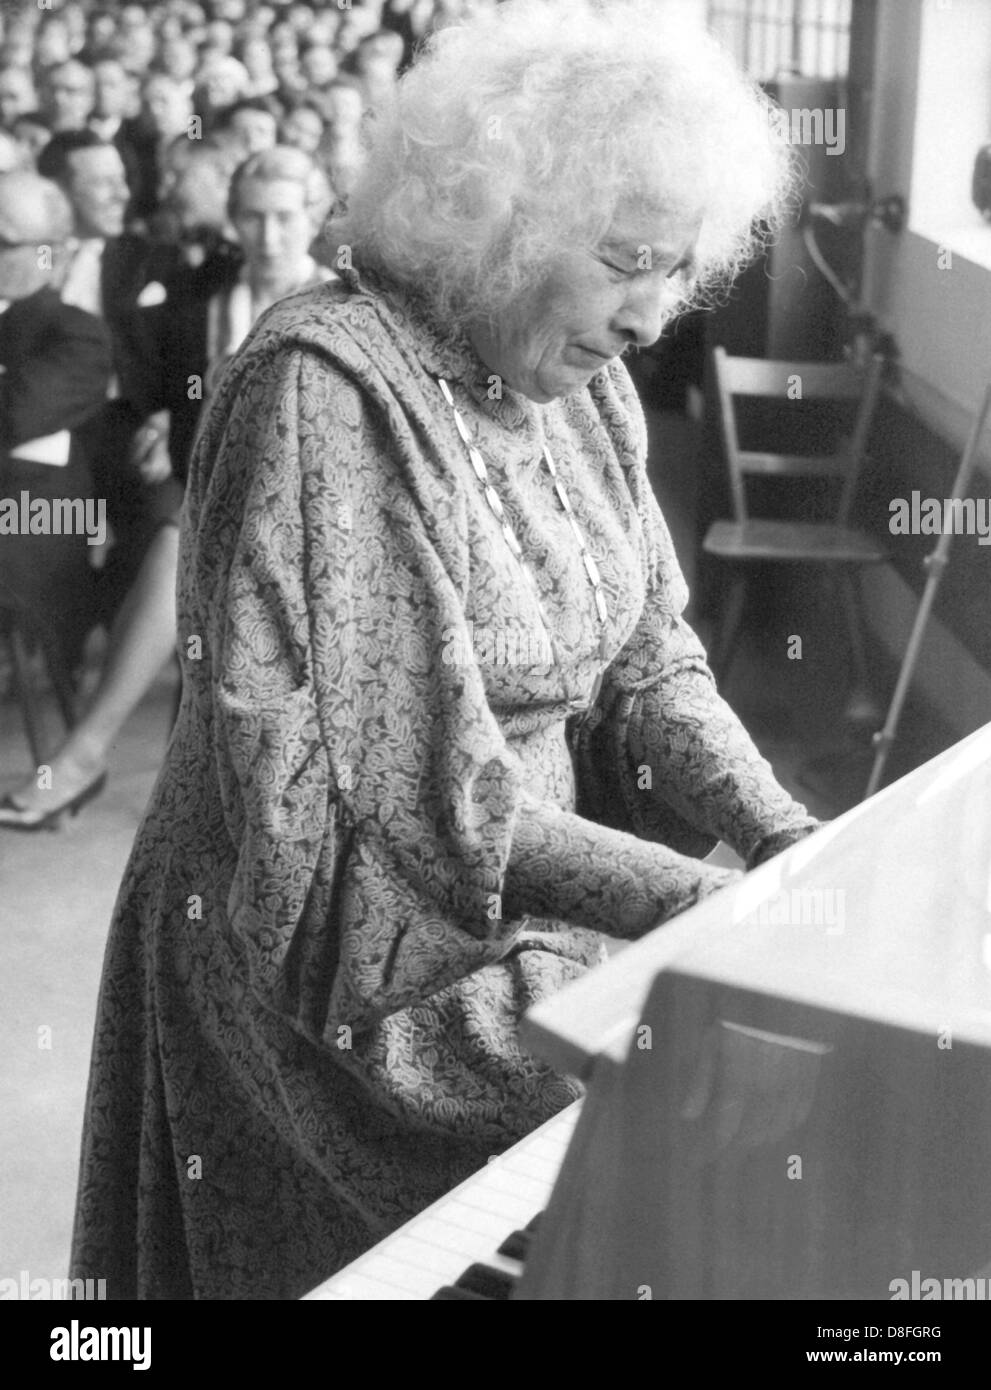 Pianistin Elly Ney während eines Konzerts im Jahr 1961. Sie wurde weltweit bekannt als Interpret von Beethoven und trat in den großen Konzertsälen in Europa und den USA. Sie wurde am 27. September 1882 in Düsseldorf geboren und starb am 31. März 1968 in Tutzing. Stockfoto